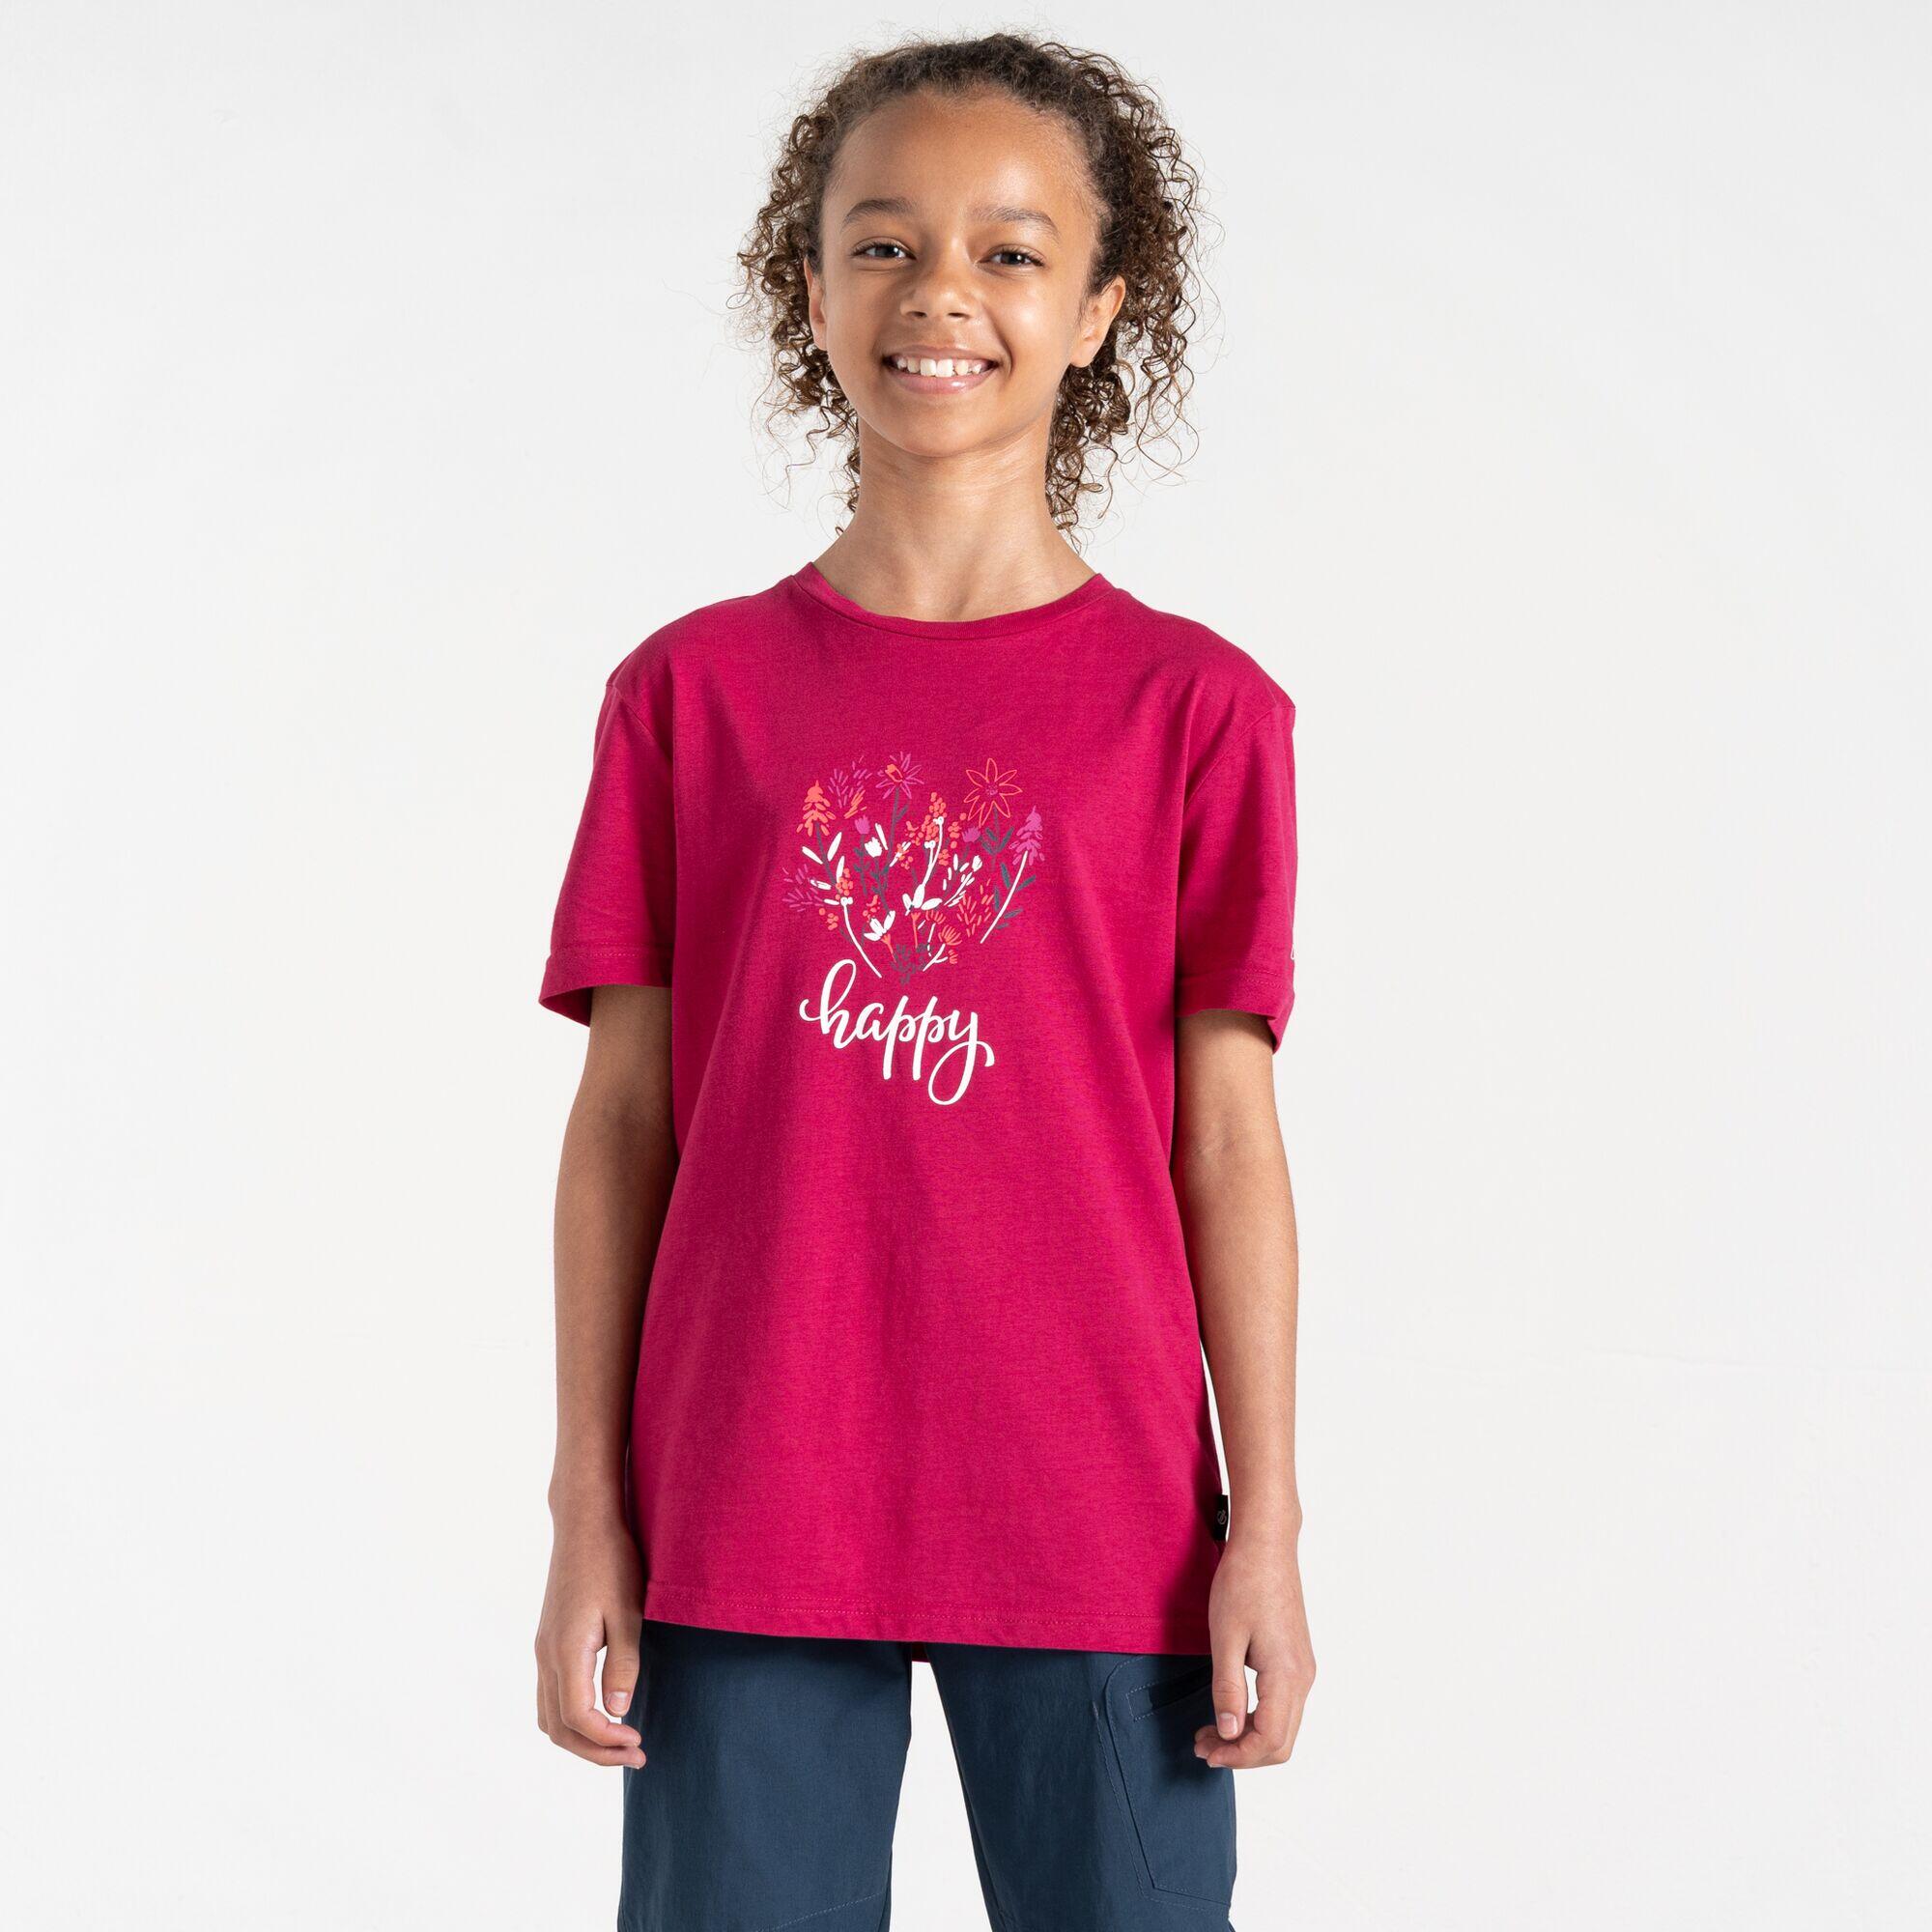 DARE 2B Dare 2b - Kids' Trailblazer II T-Shirt